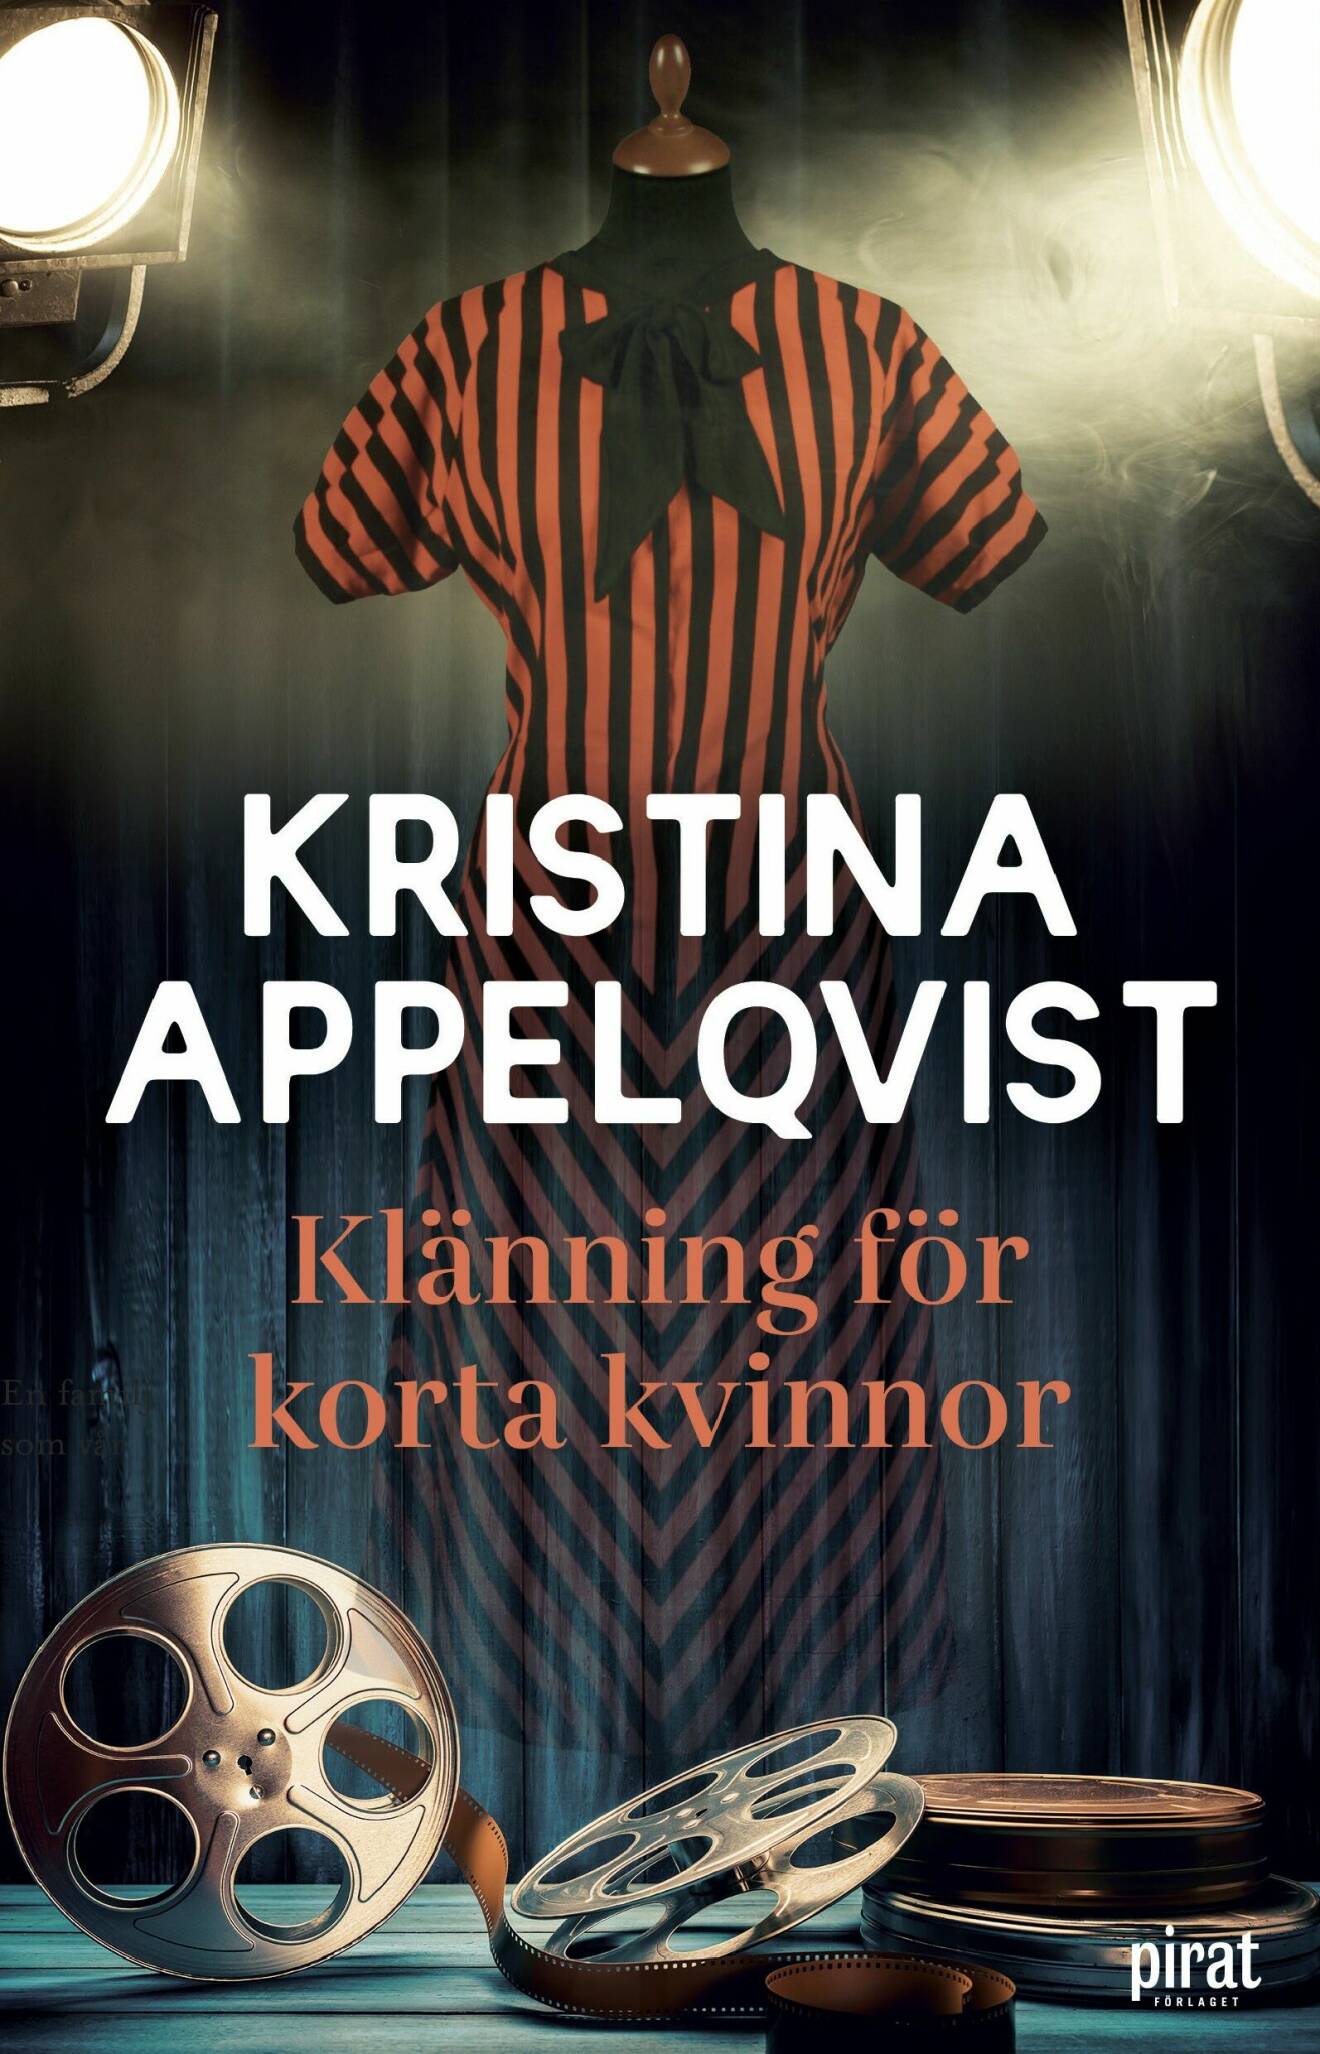 Klänning för korta kvinnor av Kristina Appelqvist.